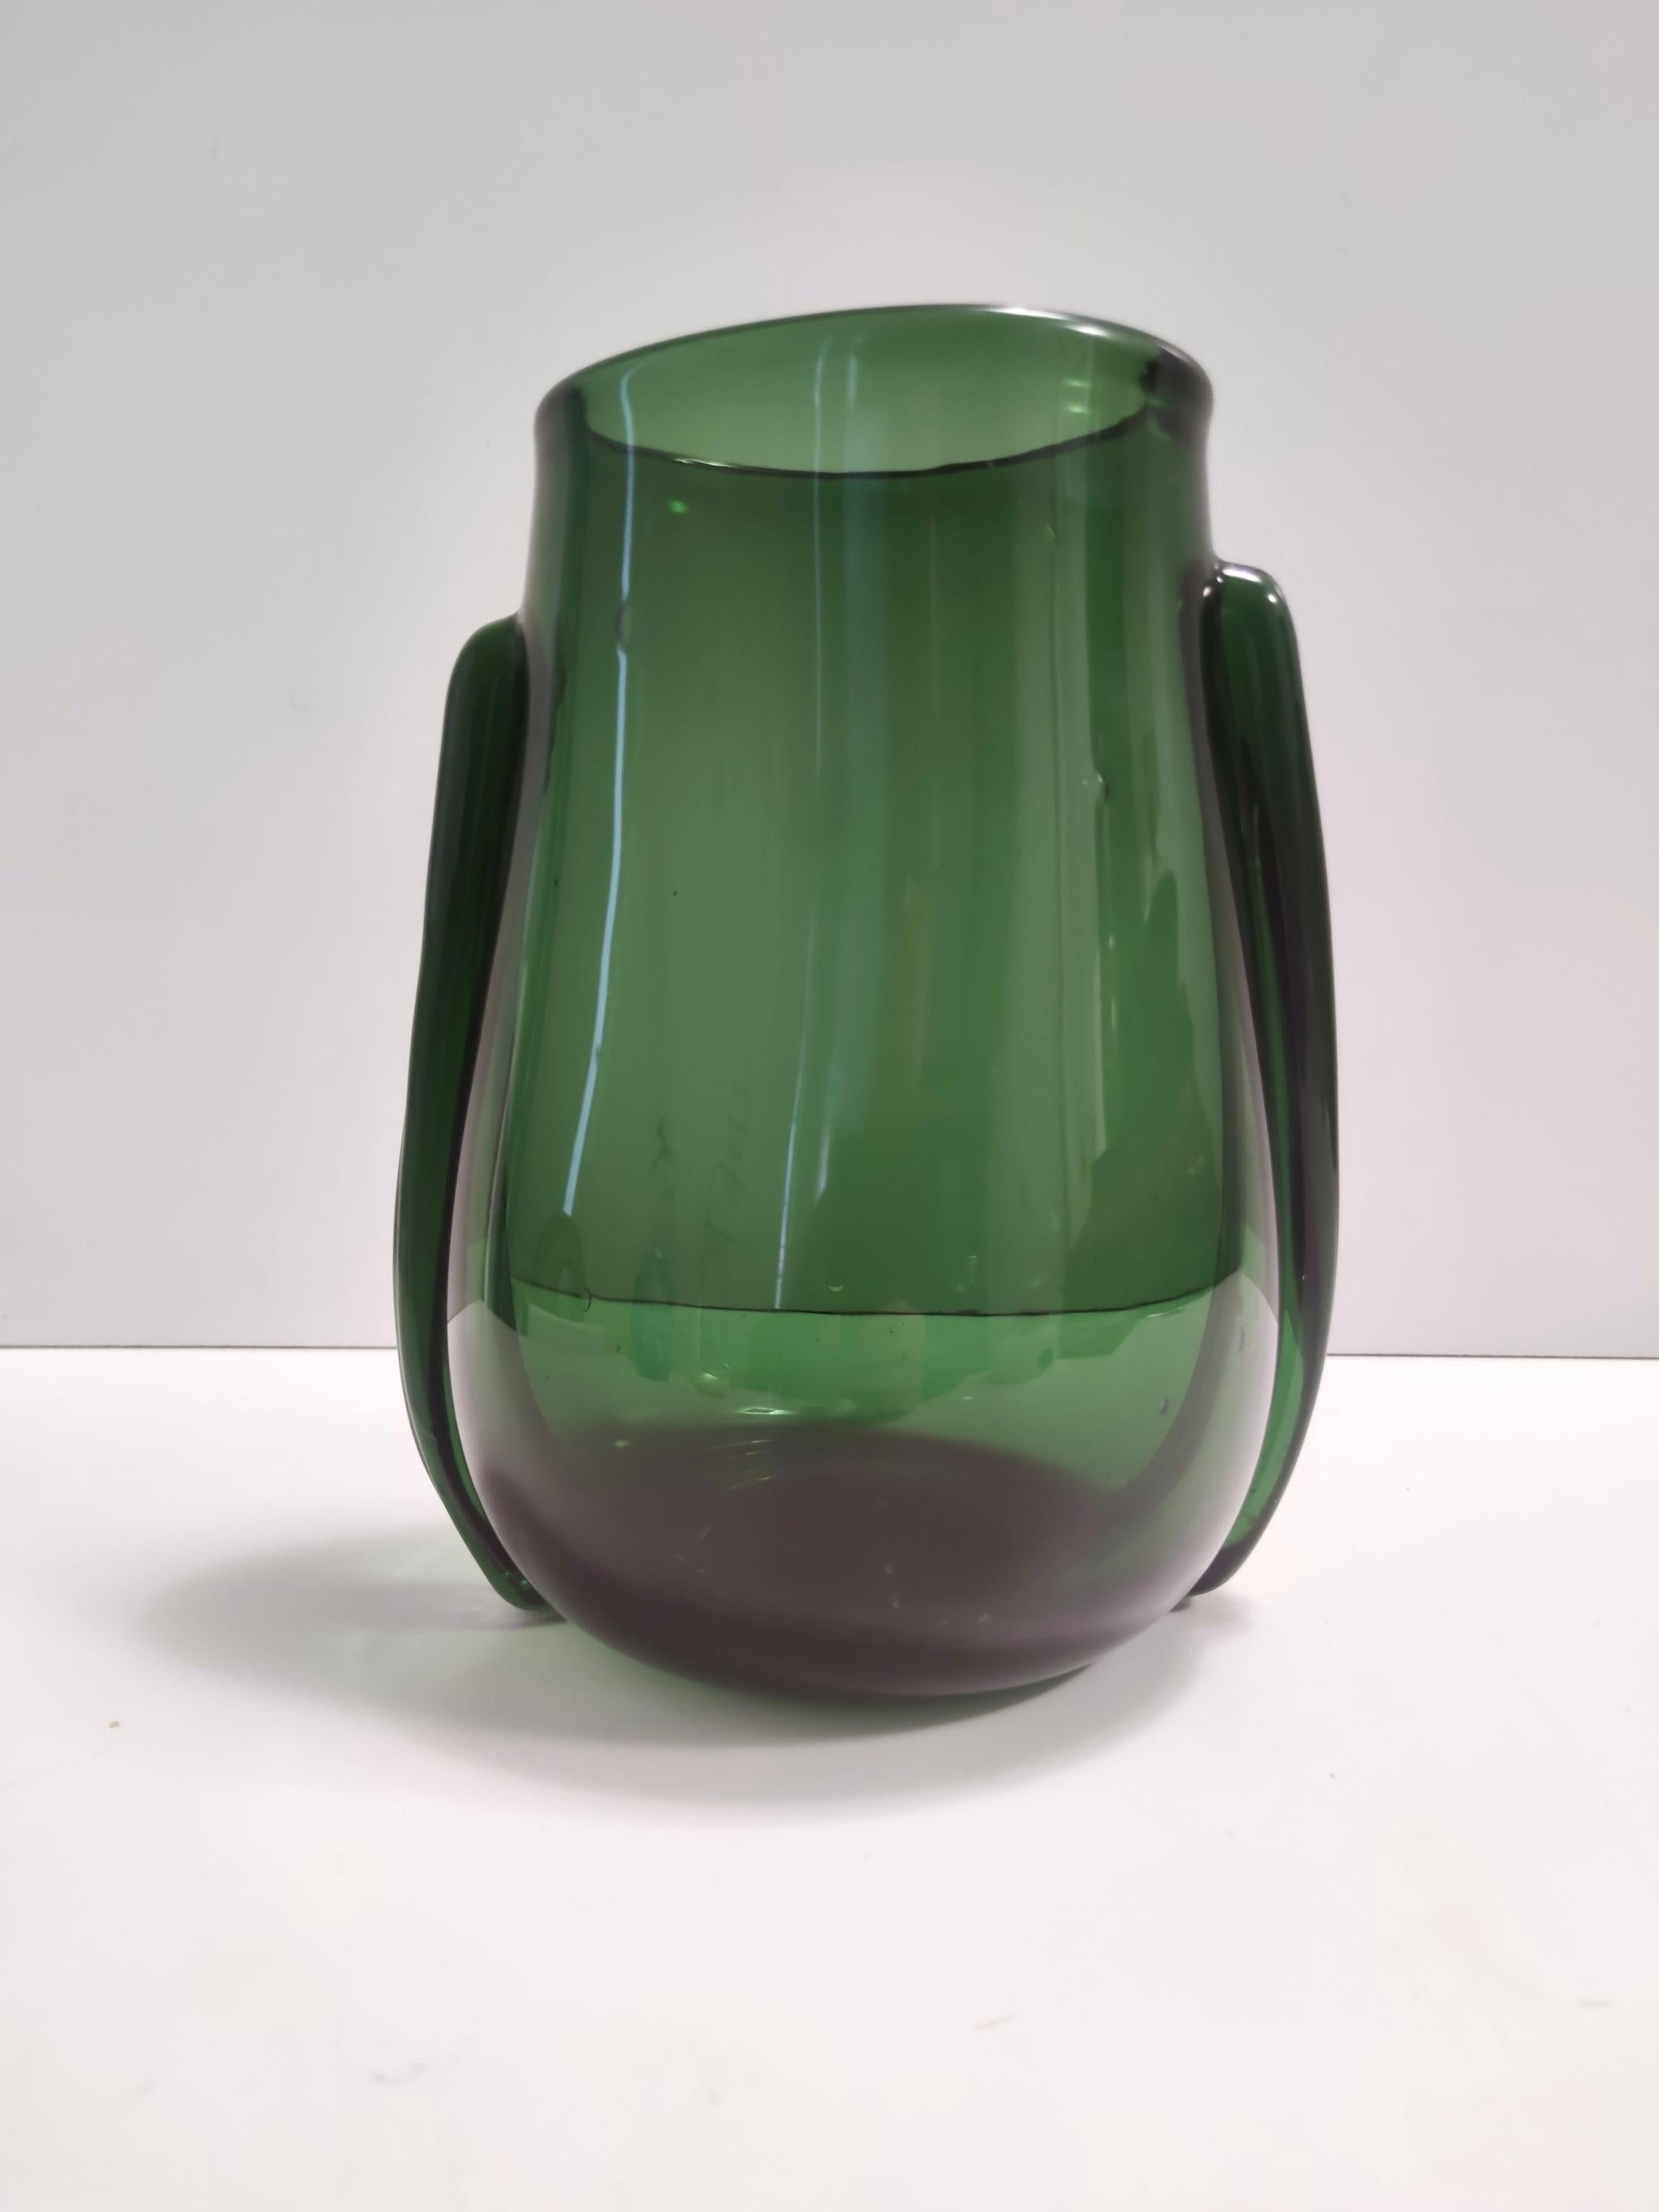 Fabriqué en Italie, années 1940 - 1950. 
Fabriqué en verre vert soufflé à la bouche, à Empoli.
Le verre présente des bulles et des transparences agréables grâce au processus de fabrication artisanale. 
Il s'agit d'une pièce vintage, qui peut donc